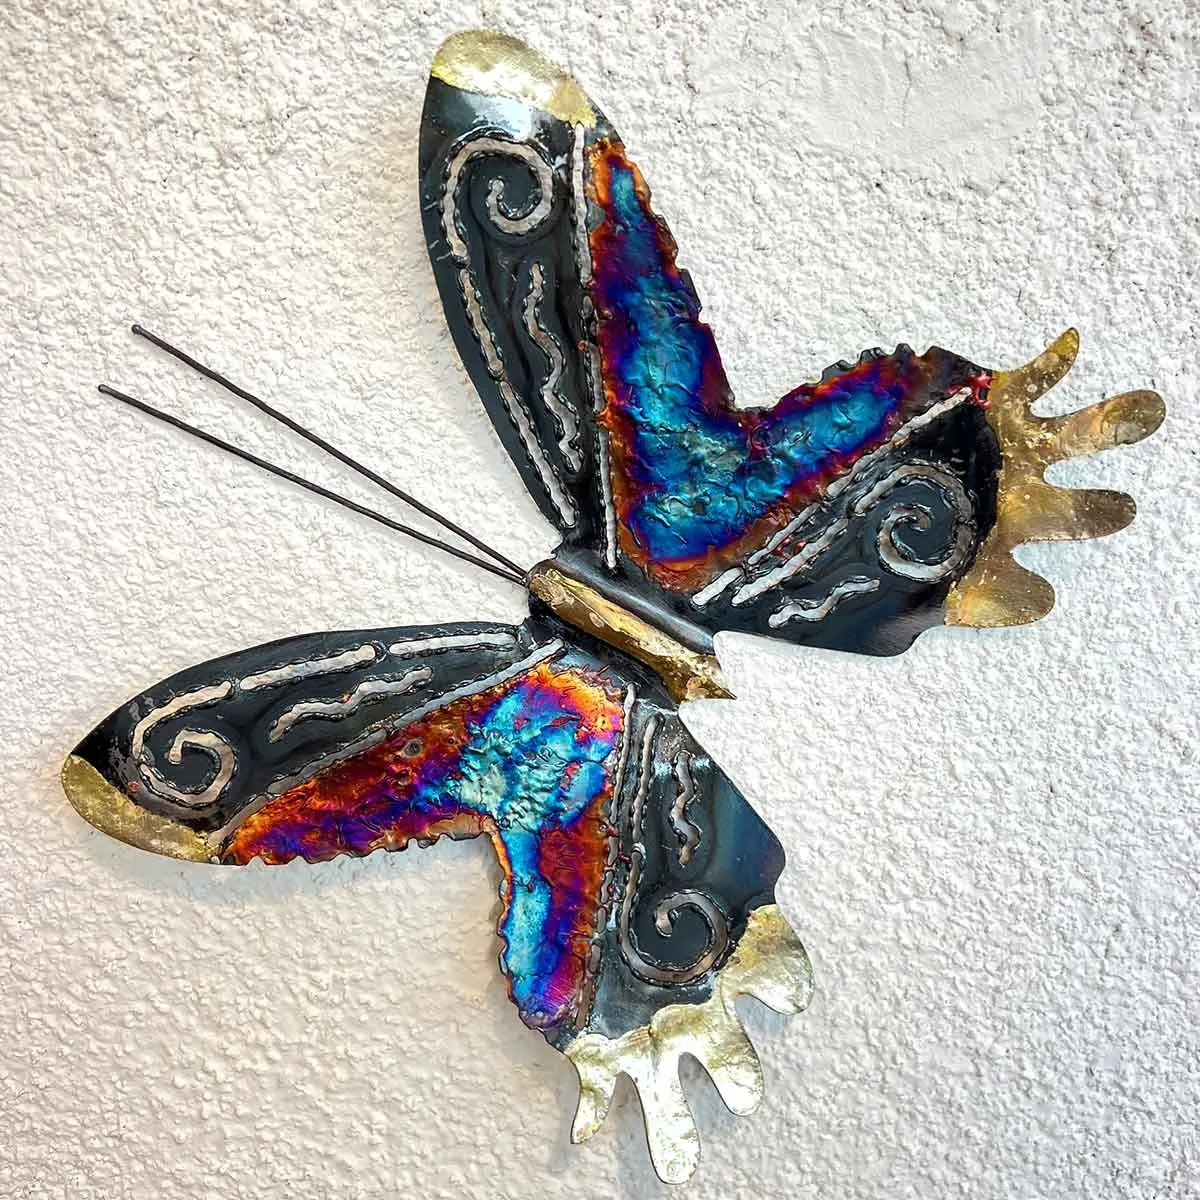 Papillons en métal et cuivre - Décoration murale unique - Amadera Taille  20.5 x 24 cm